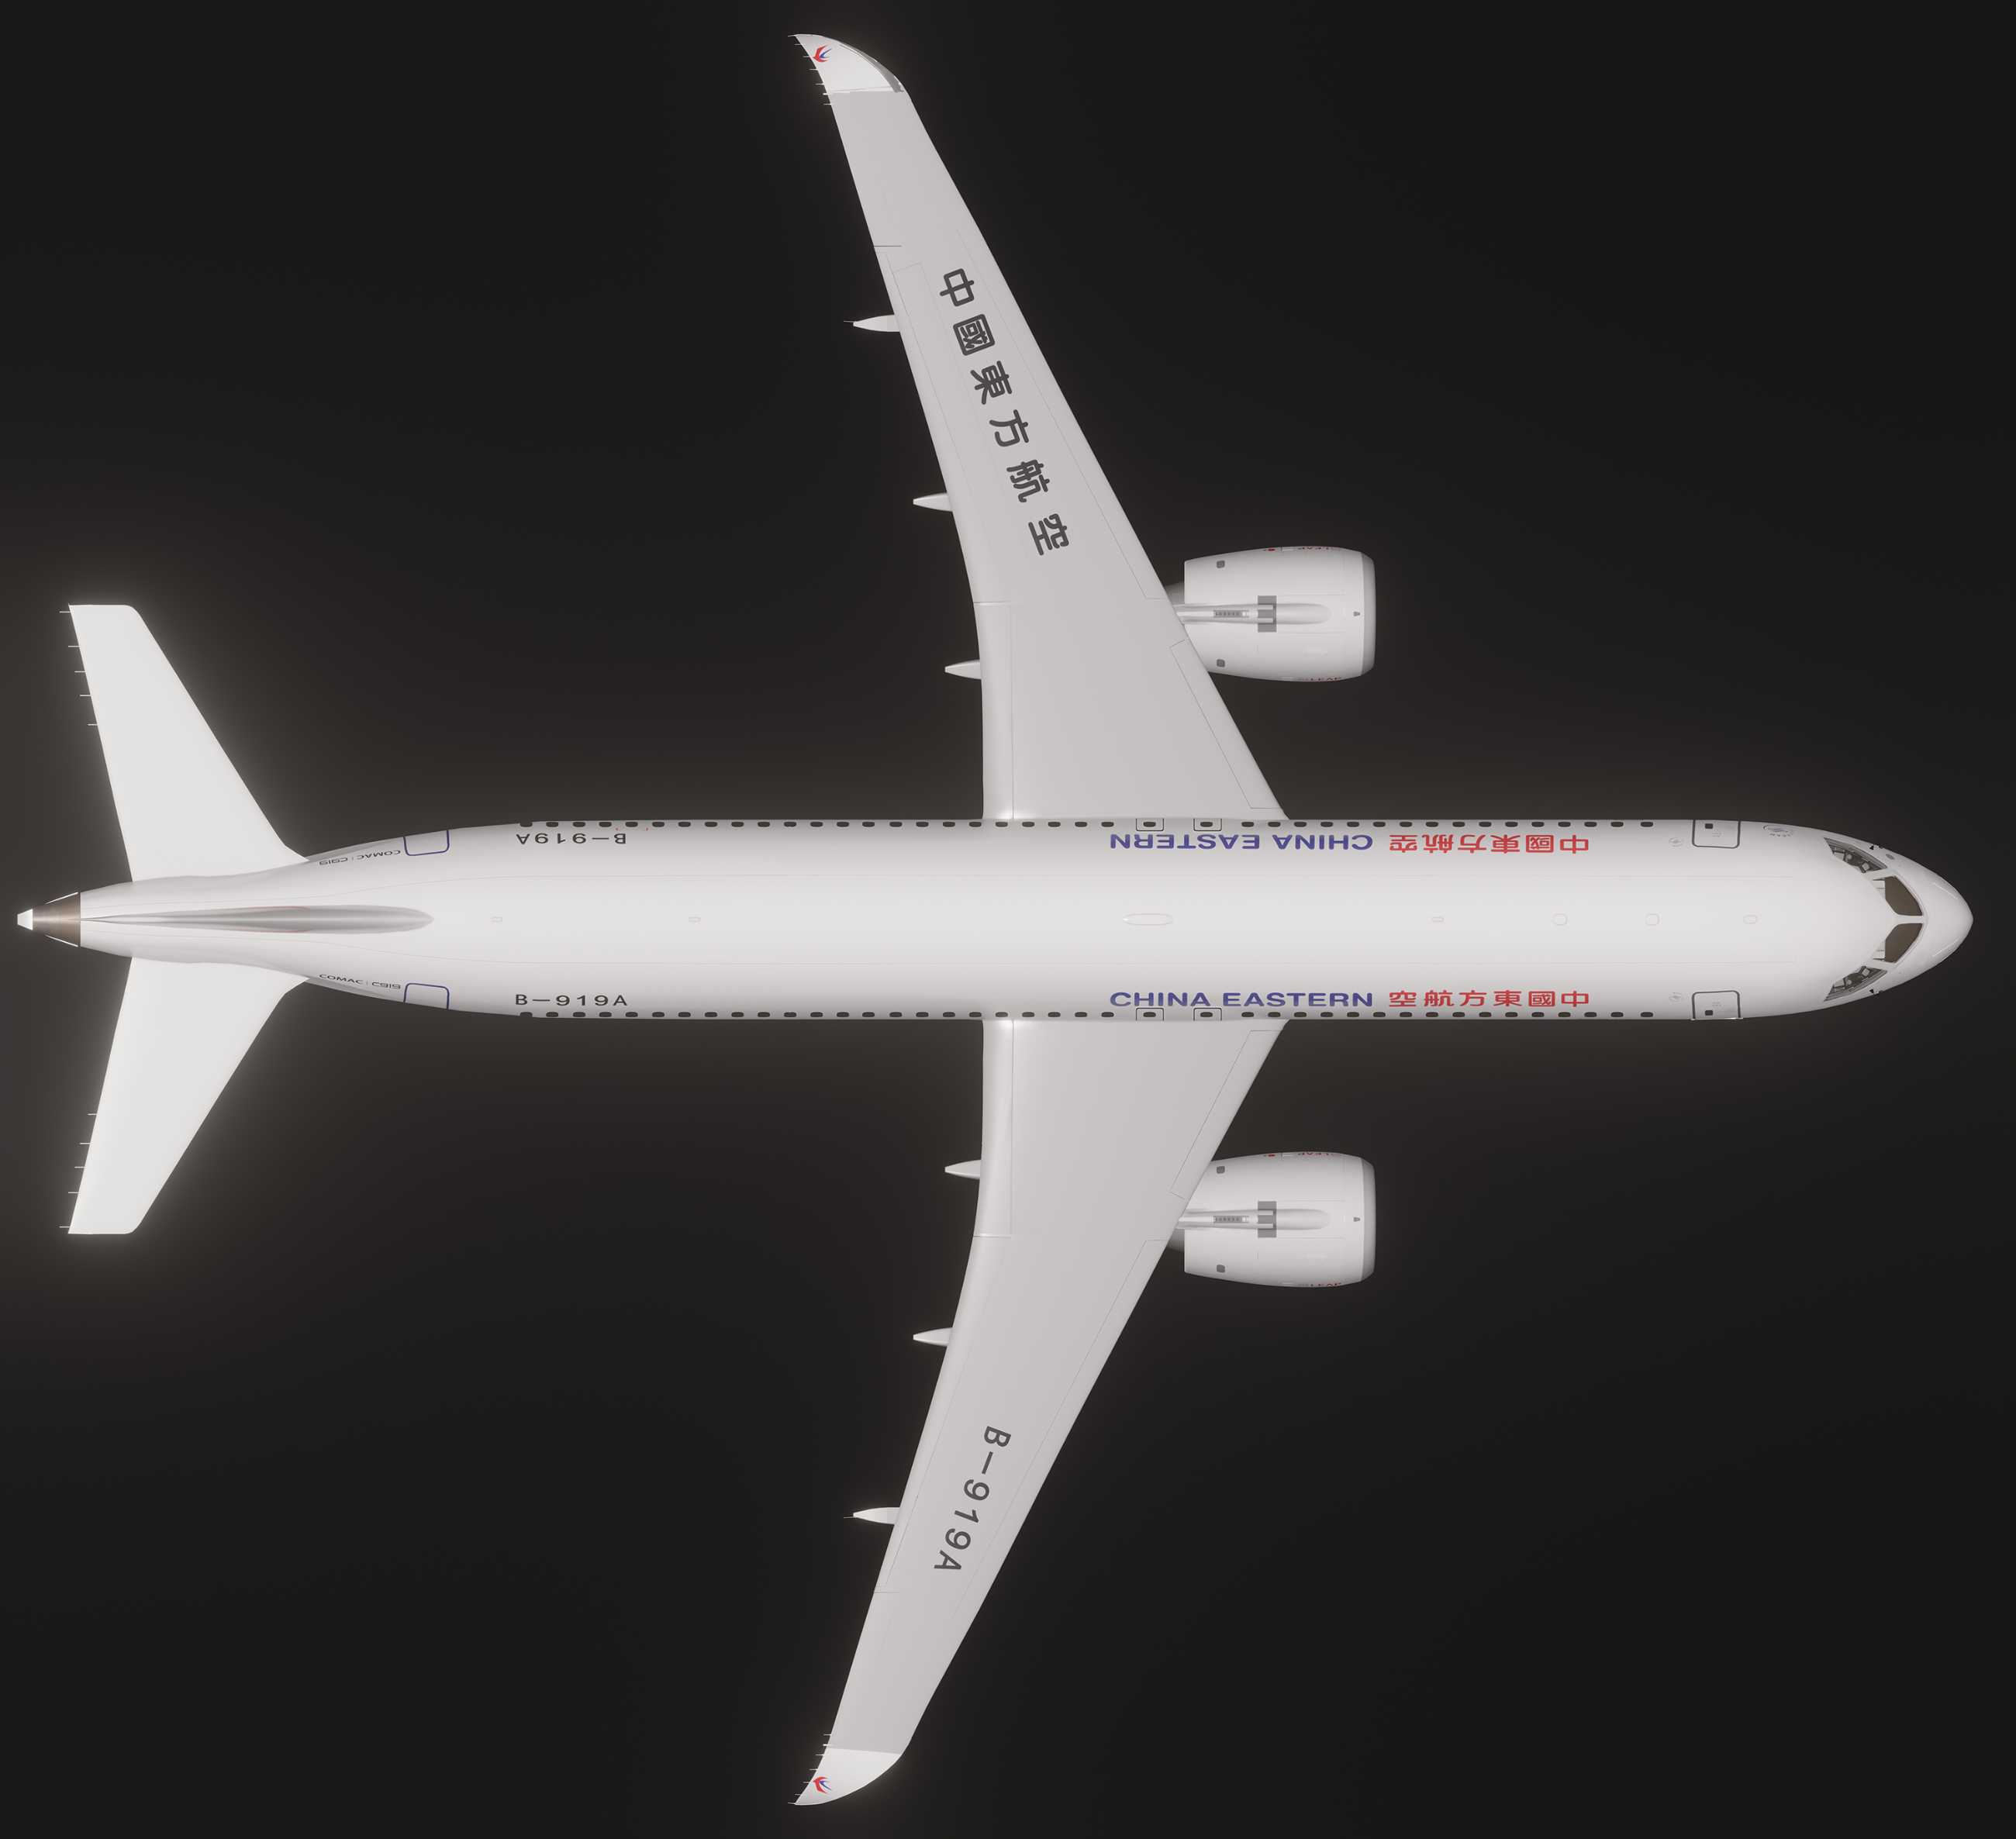 自研C919国产大飞机机模demo 微软模拟飞行演示2.0-5370 